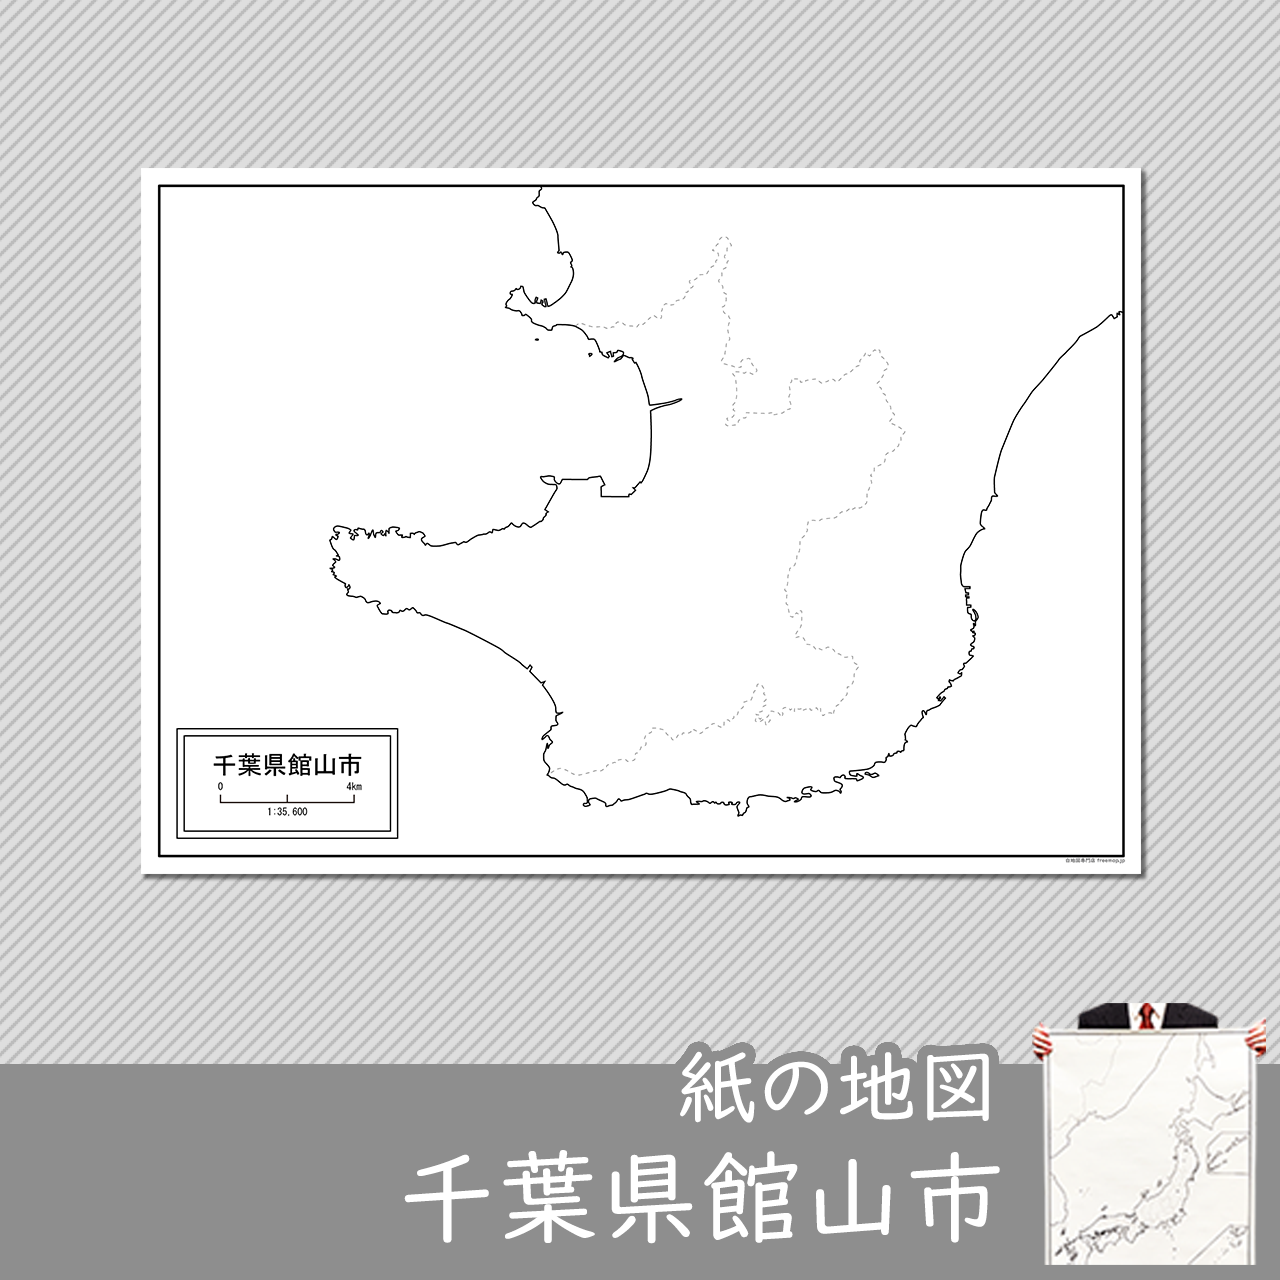 館山市の紙の白地図のサムネイル